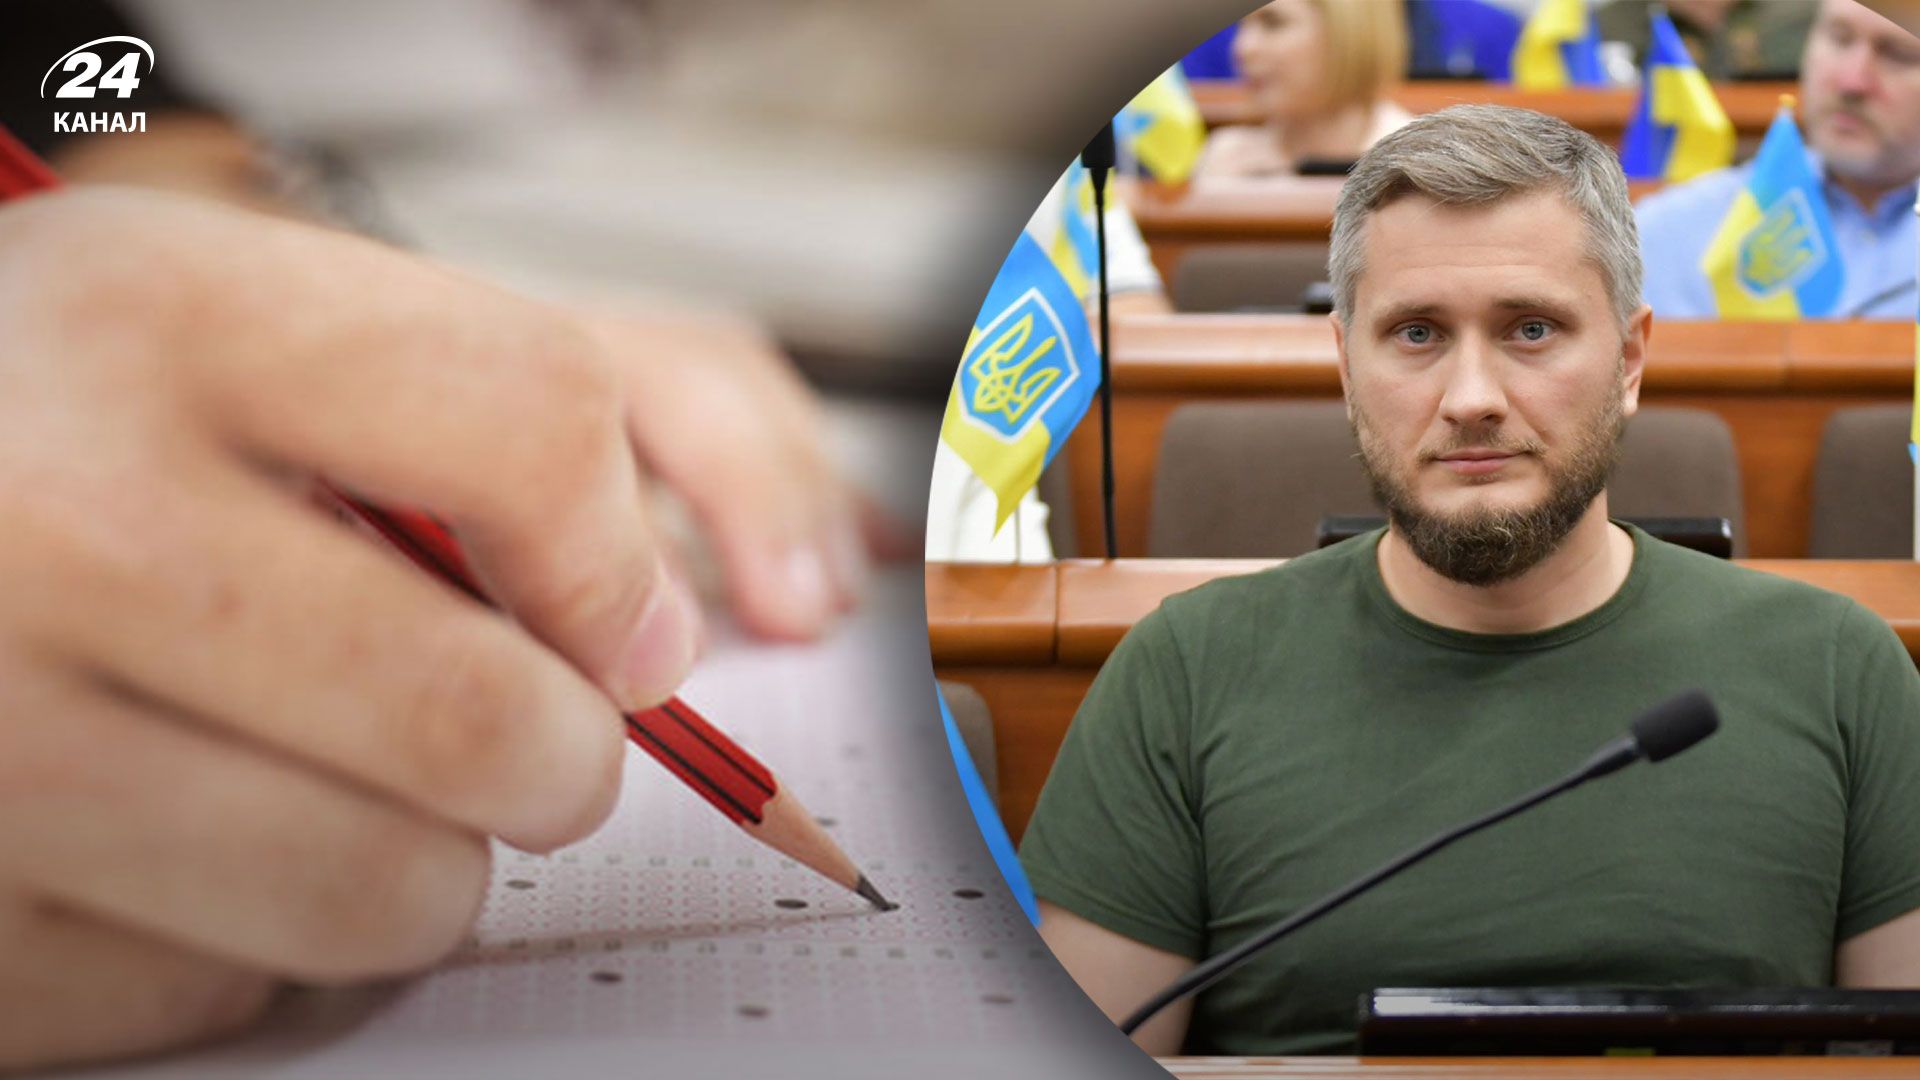 Украинский IT-предприниматель призвал компании ввести тесты на адекватность для кандидатов на работу из России